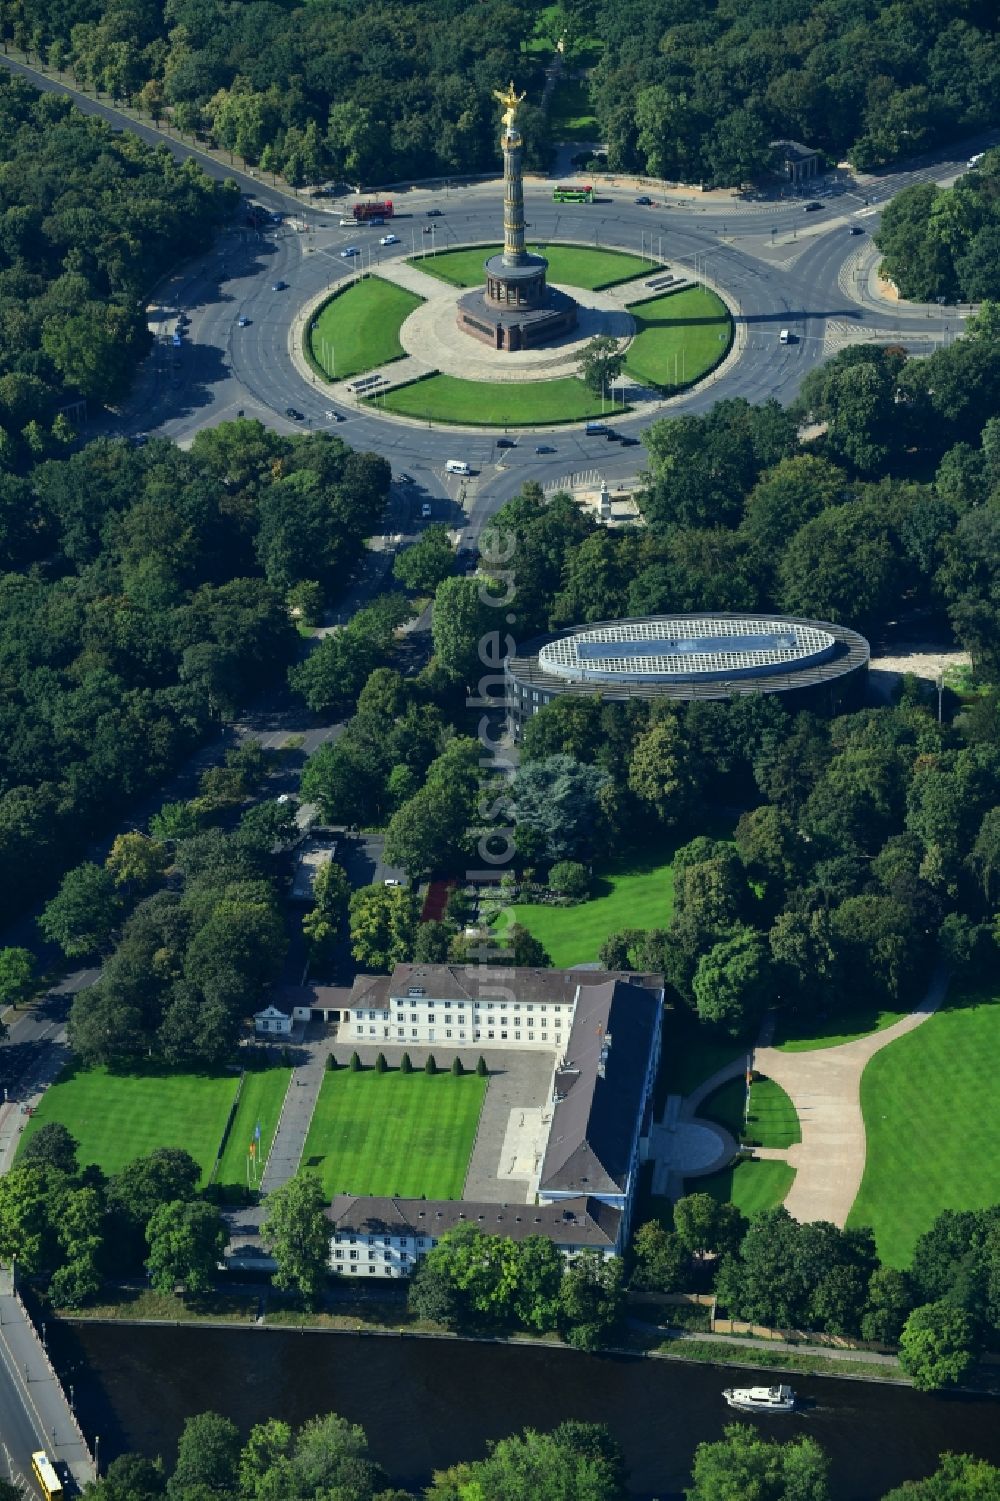 Berlin aus der Vogelperspektive: Amtssitz des Bundespräsidenten im Schloßpark von Schloß Bellevue am Spreeweg im Tiergarten in Berlin